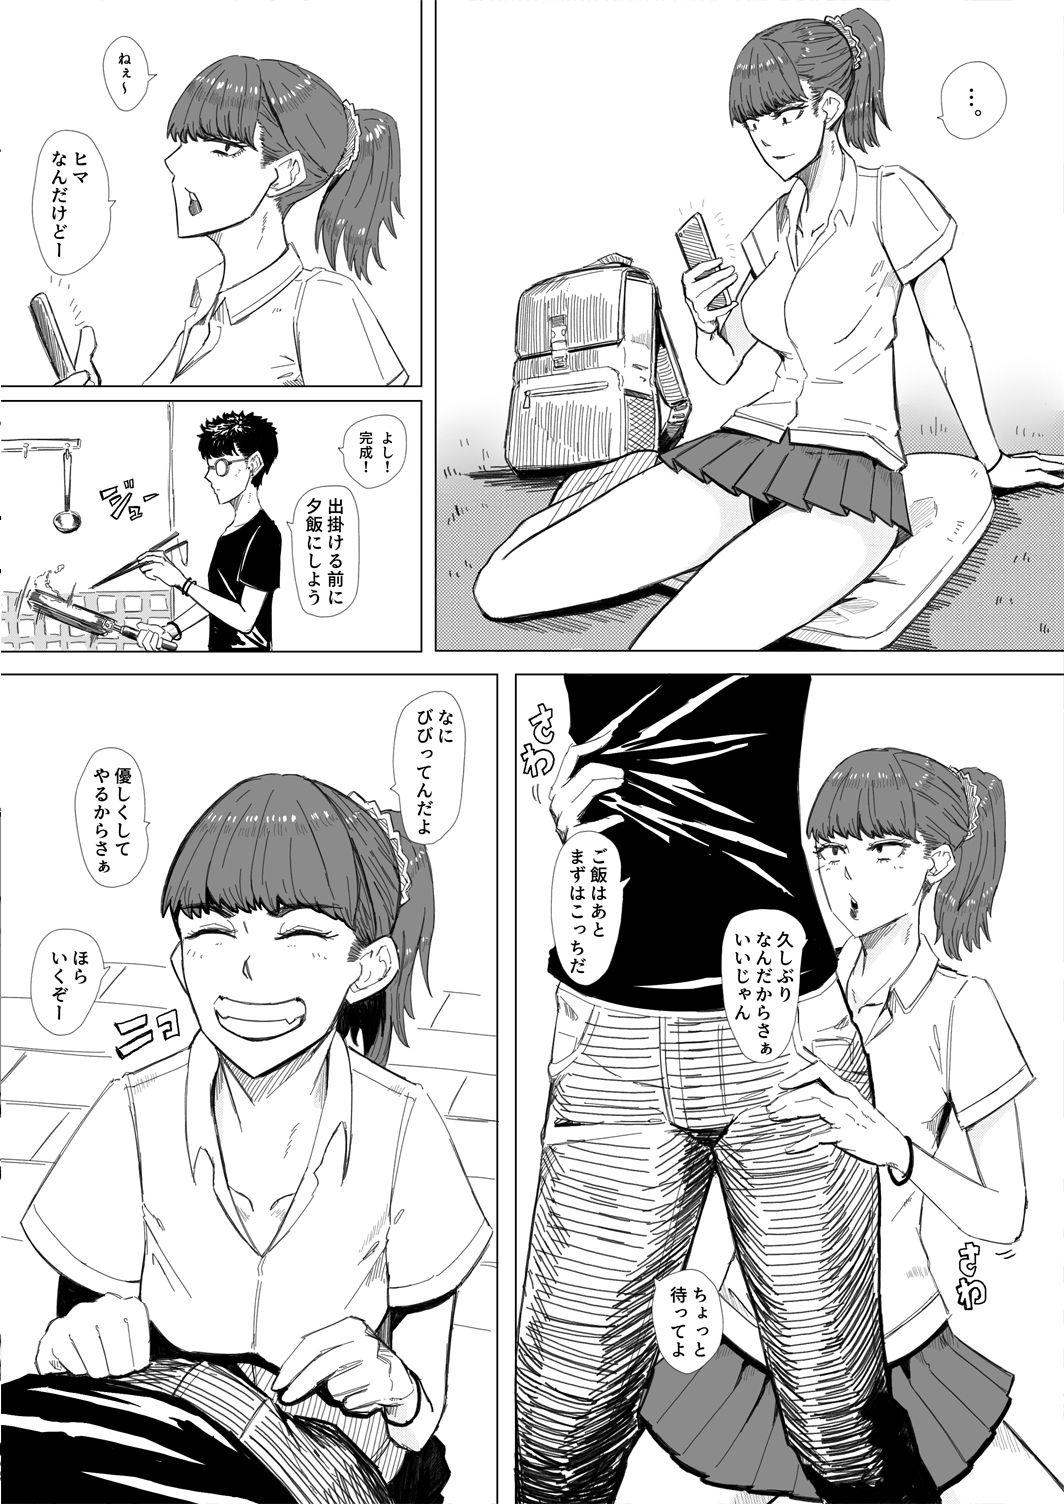 Gal to H2 _ 6P Manga 1